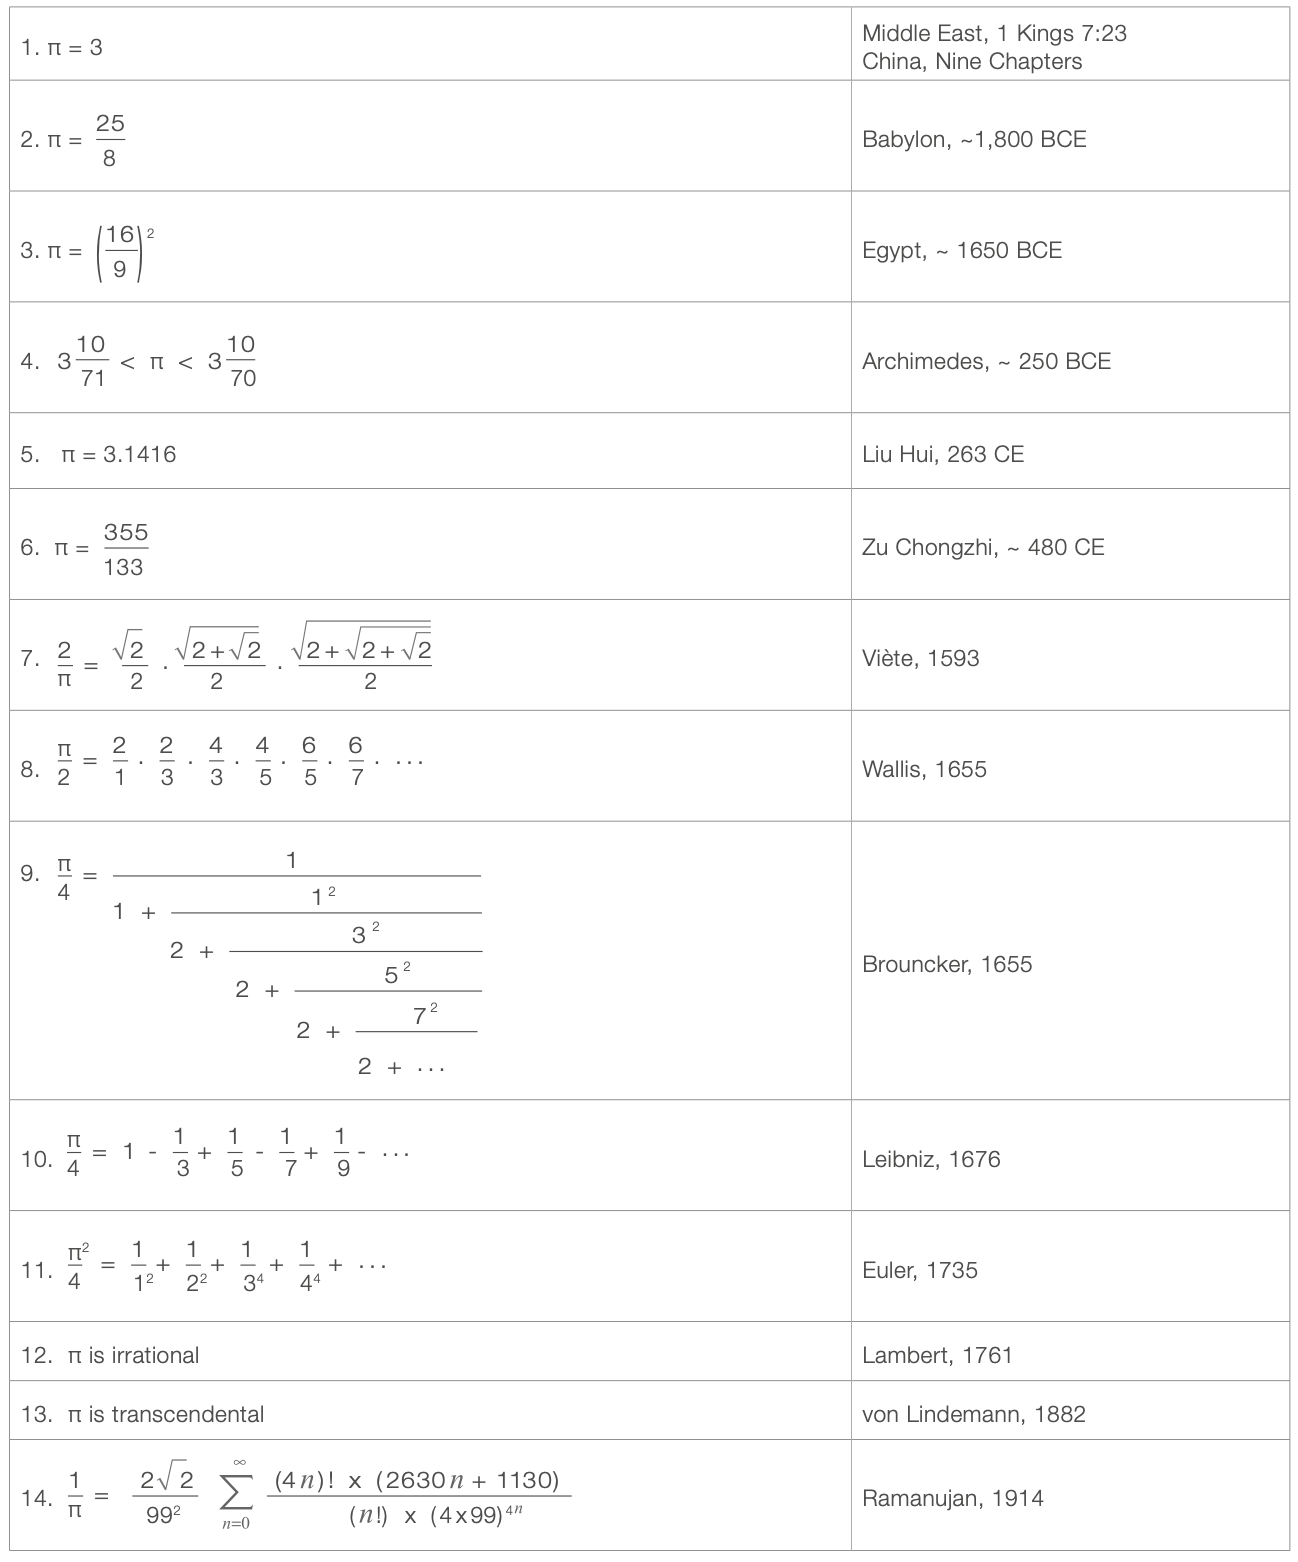 Ramanujan Equations